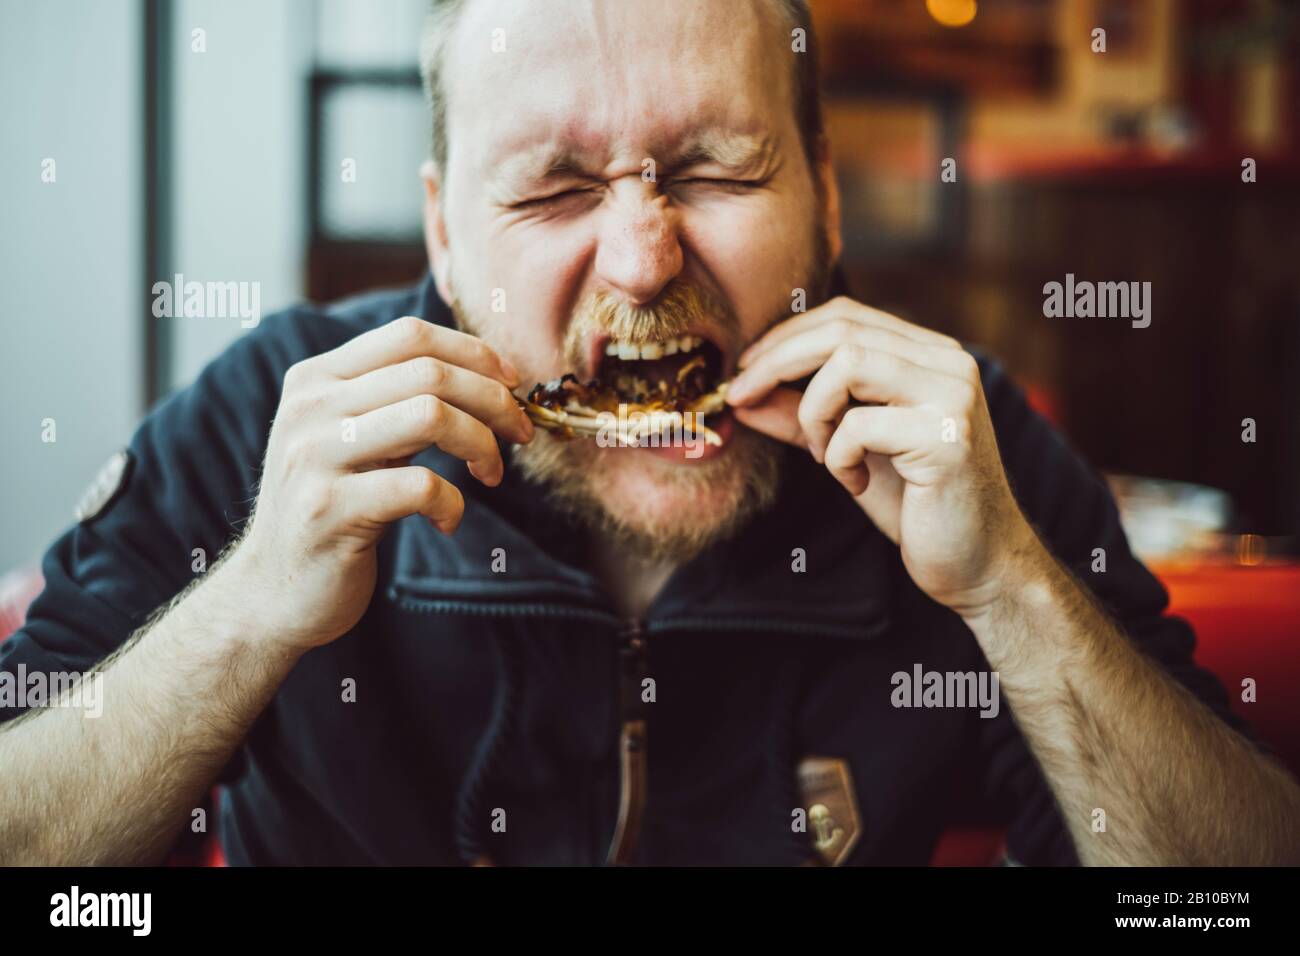 L'homme mange de la nourriture rapide dans un restaurant, Brighton, Angleterre Banque D'Images